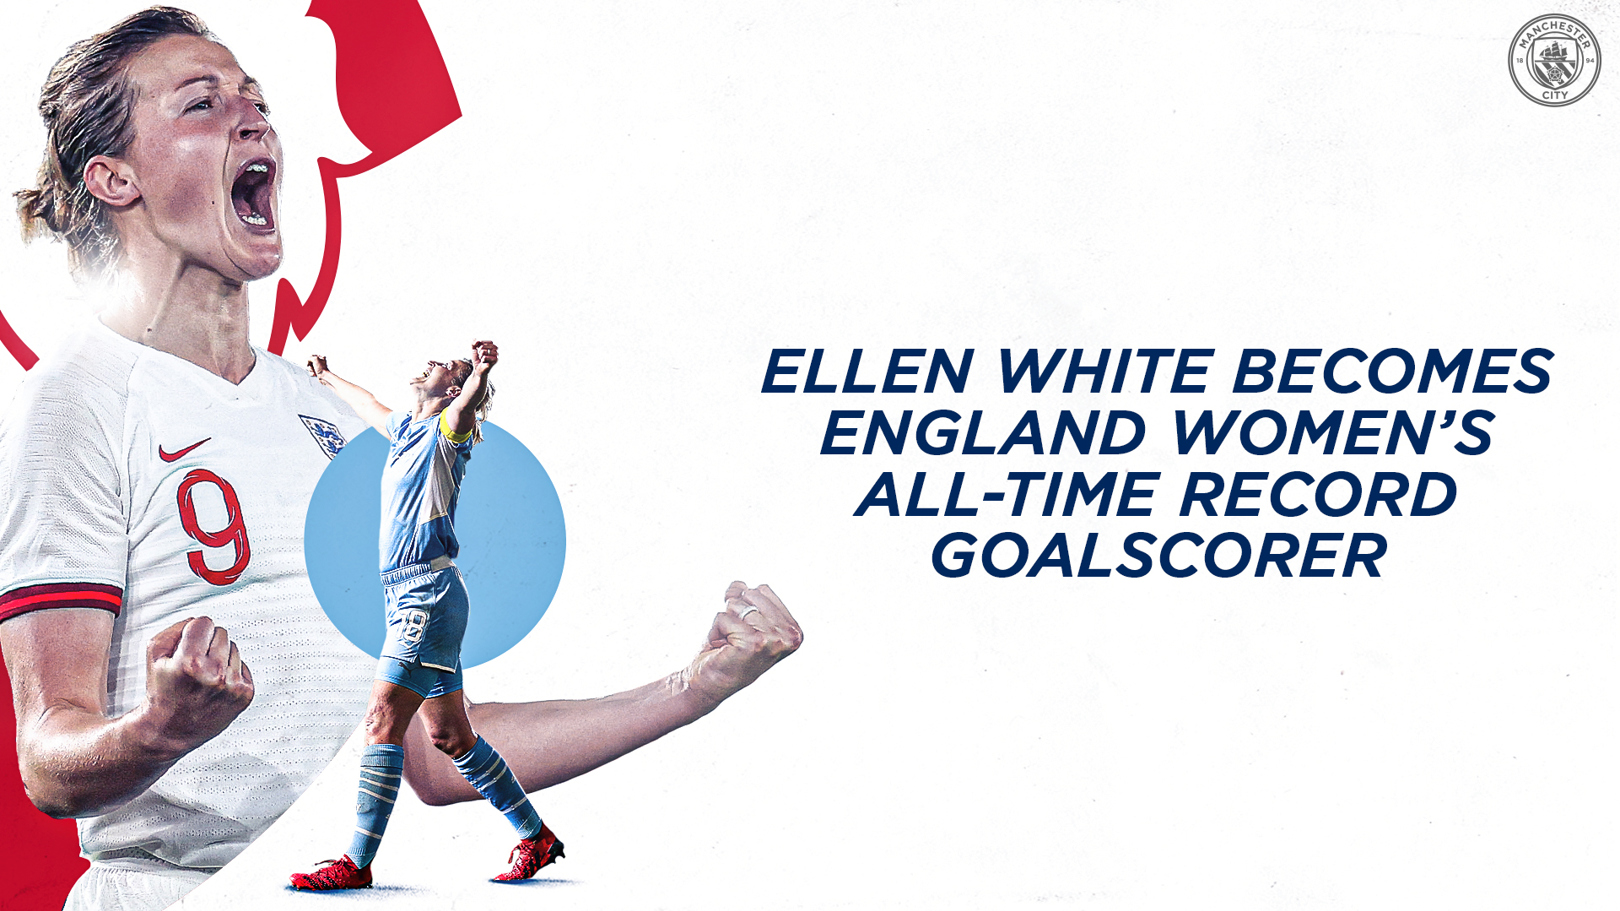 20골을 넣은 잉글랜드팀 경기에서 최다 득점자로 올라선 엘렌 화이트